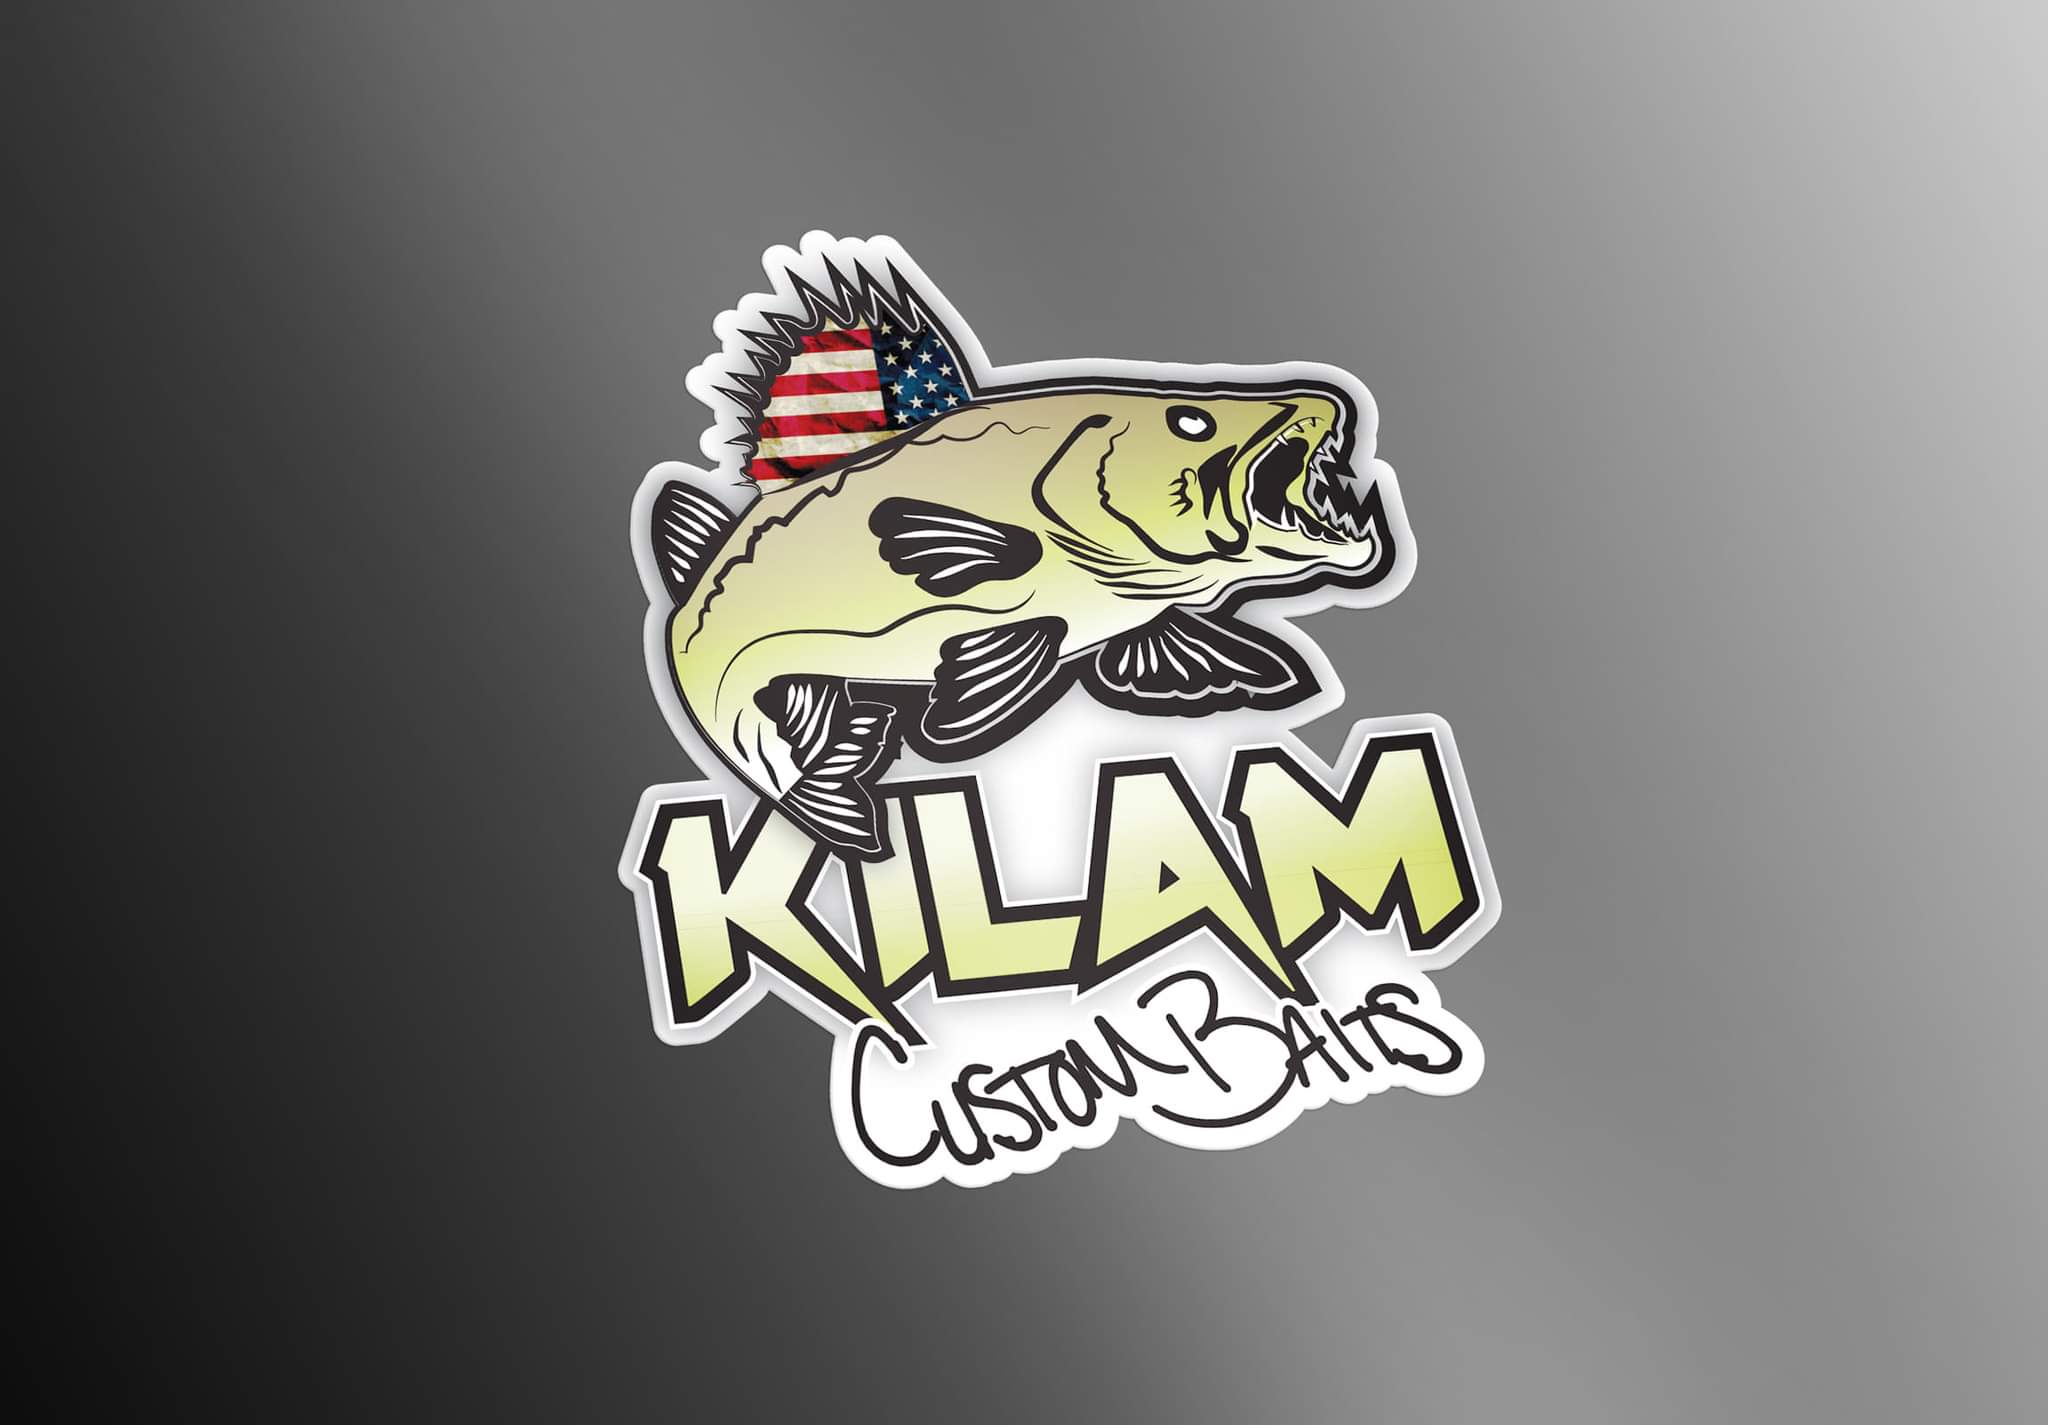 KILAM Custom Baits